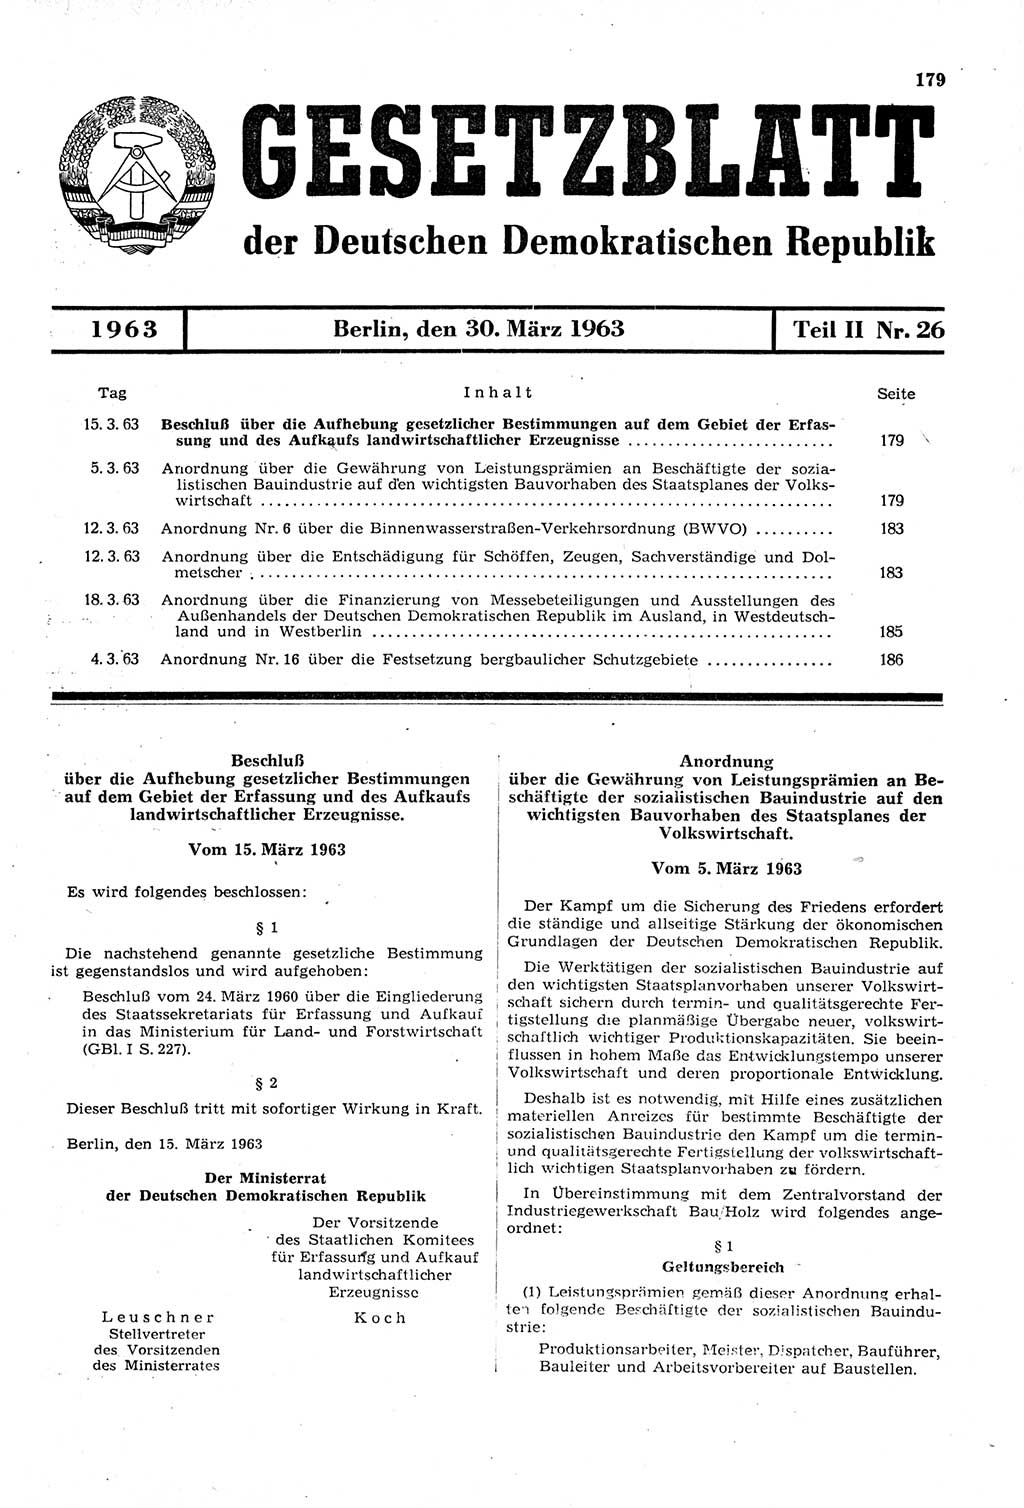 Gesetzblatt (GBl.) der Deutschen Demokratischen Republik (DDR) Teil ⅠⅠ 1963, Seite 179 (GBl. DDR ⅠⅠ 1963, S. 179)